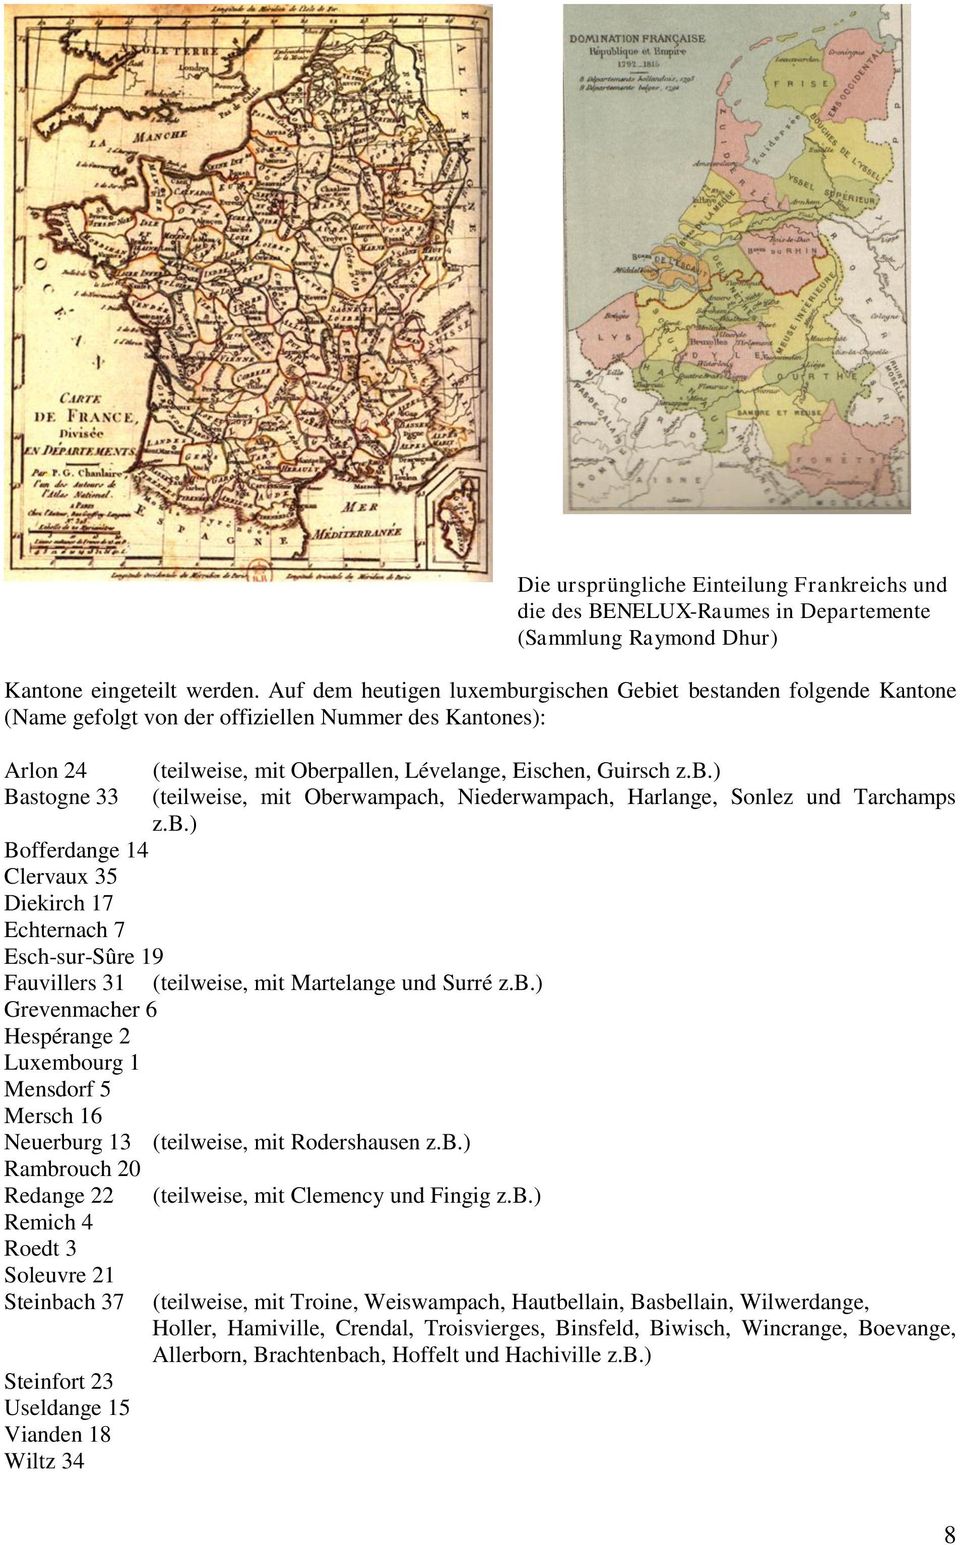 Esch-sur-Sûre 19 (teilweise, mit Oberpallen, Lévelange, Eischen, Guirsch z.b.) (teilweise, mit Oberwampach, Niederwampach, Harlange, Sonlez und Tarchamps z.b.) Fauvillers 31 (teilweise, mit Martelange und Surré z.